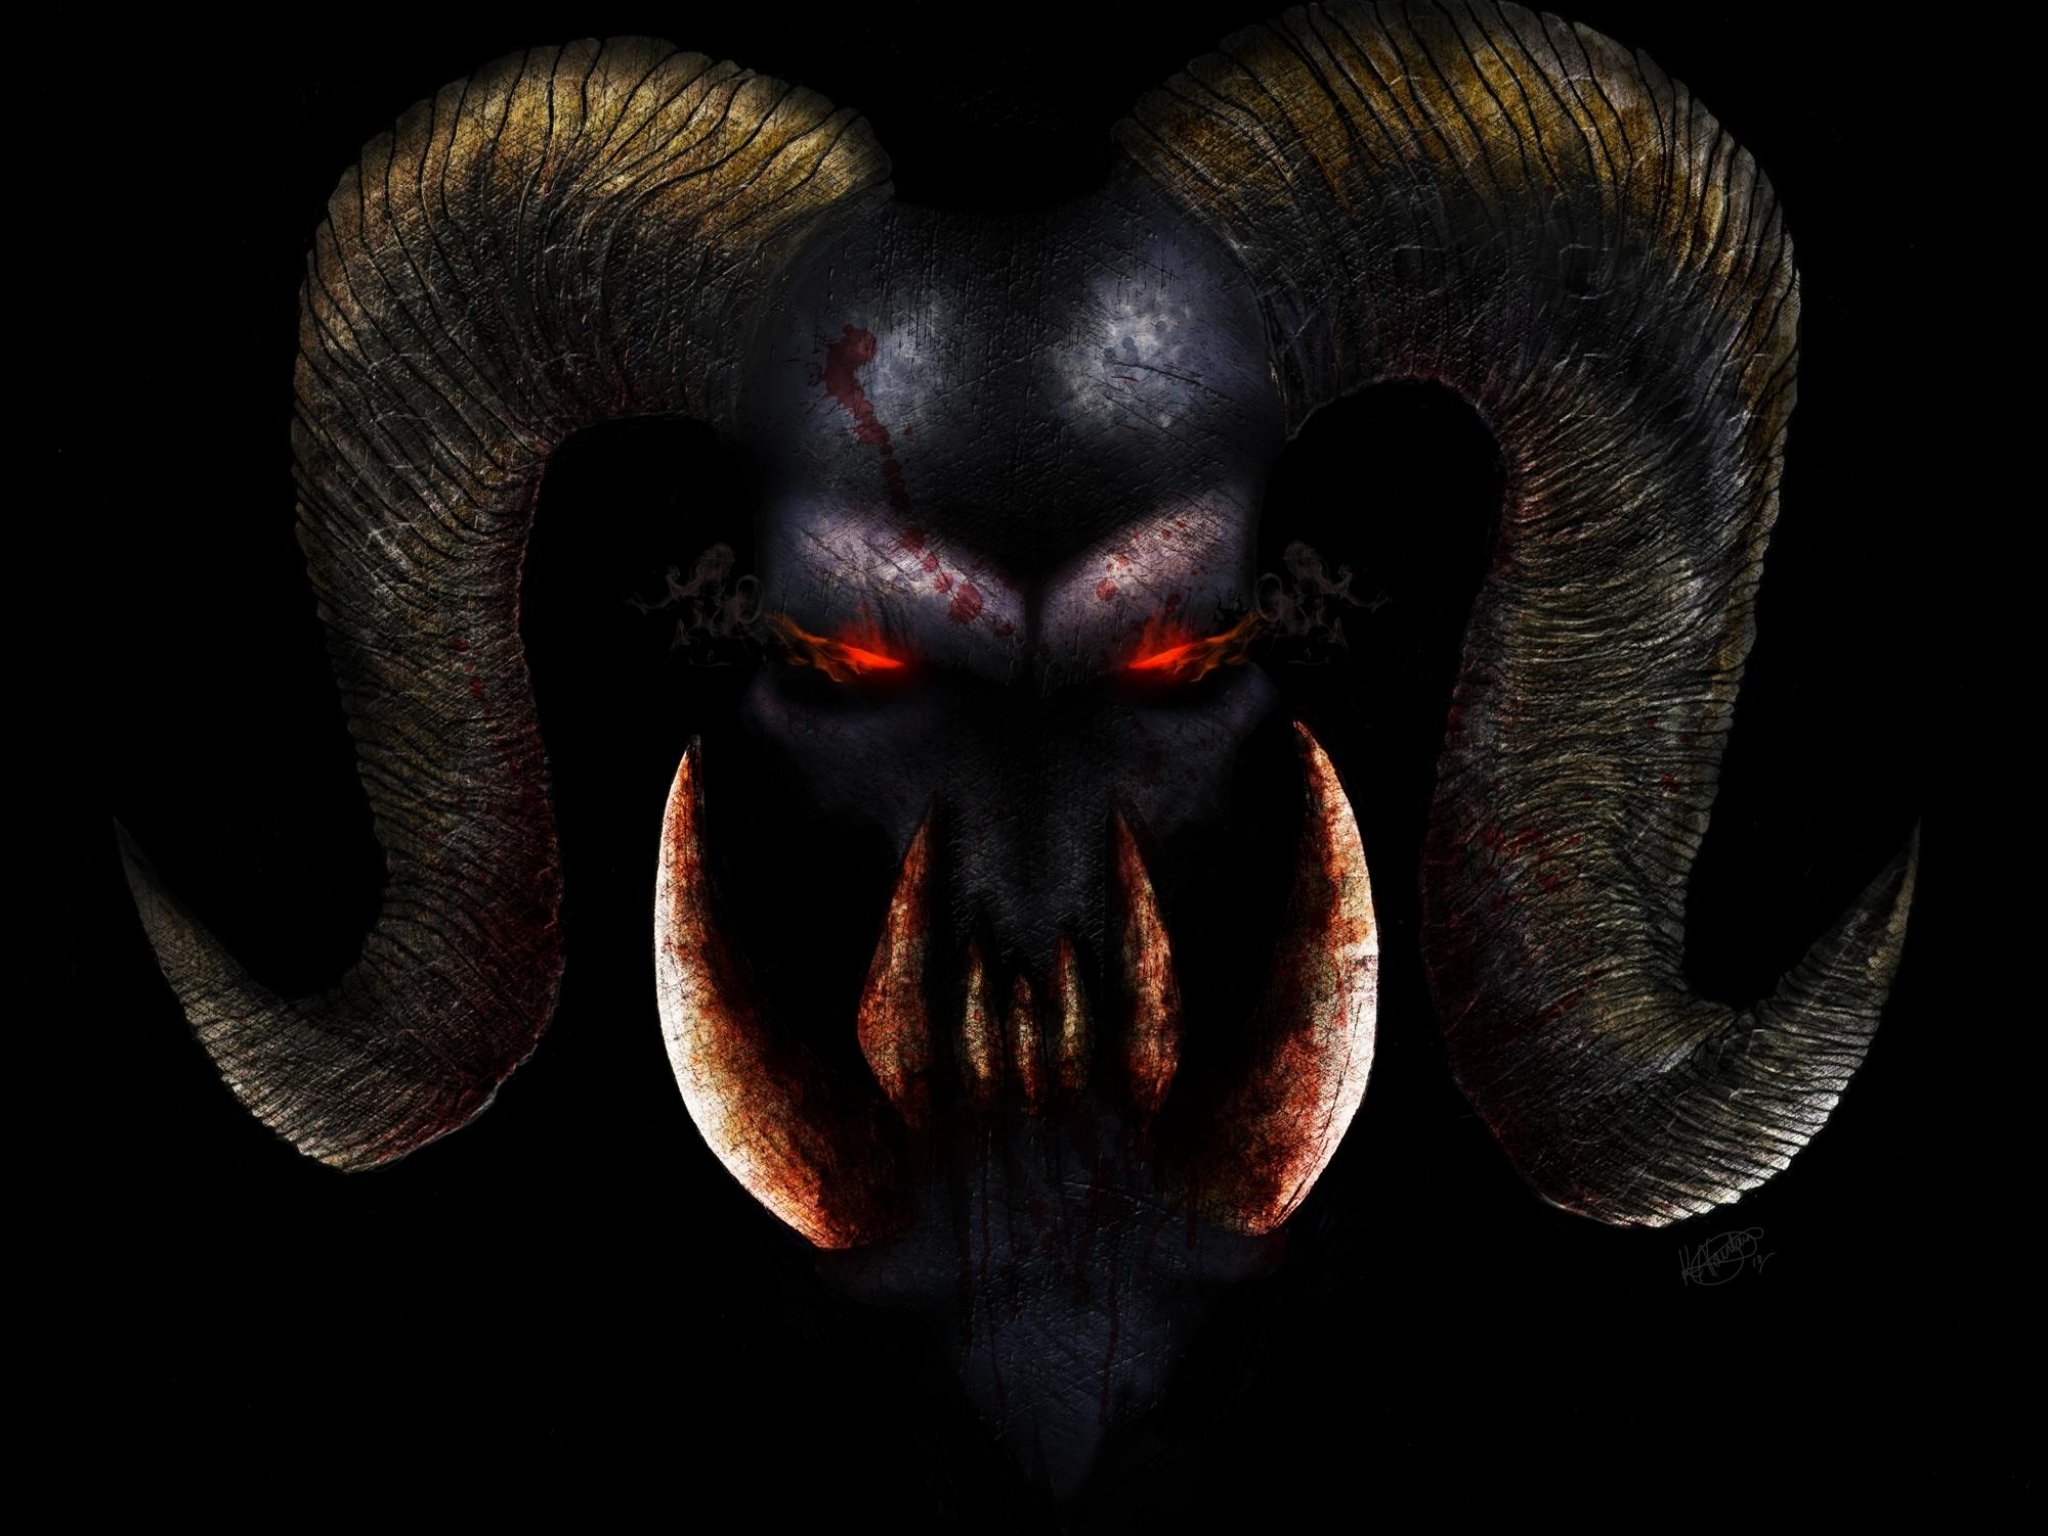 Demon Evil Dark Horror Fantasy Monster Art Artwork - Demon Face , HD Wallpaper & Backgrounds